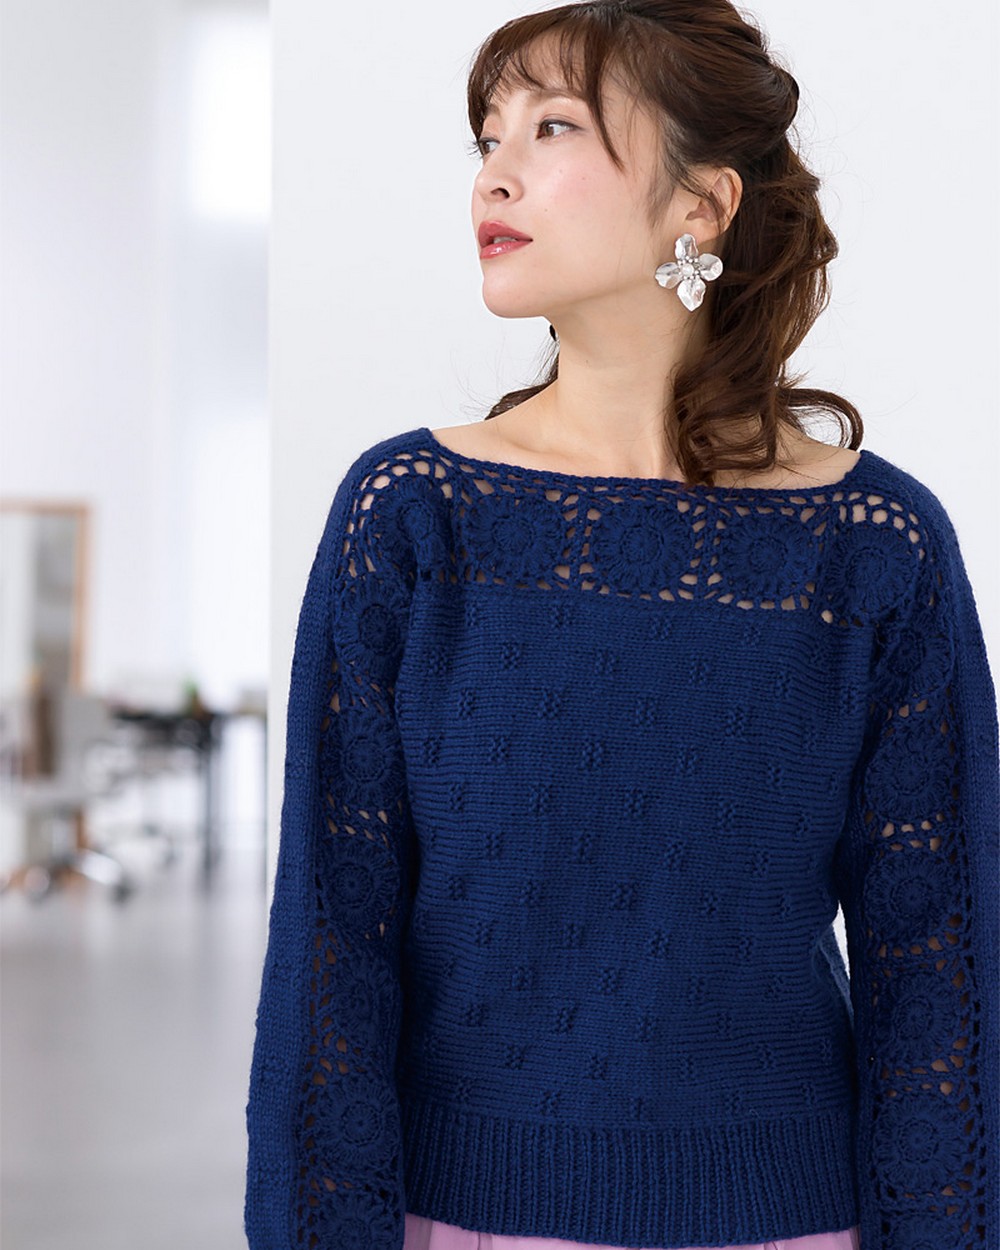 Free crochet pattern for a motif sweater